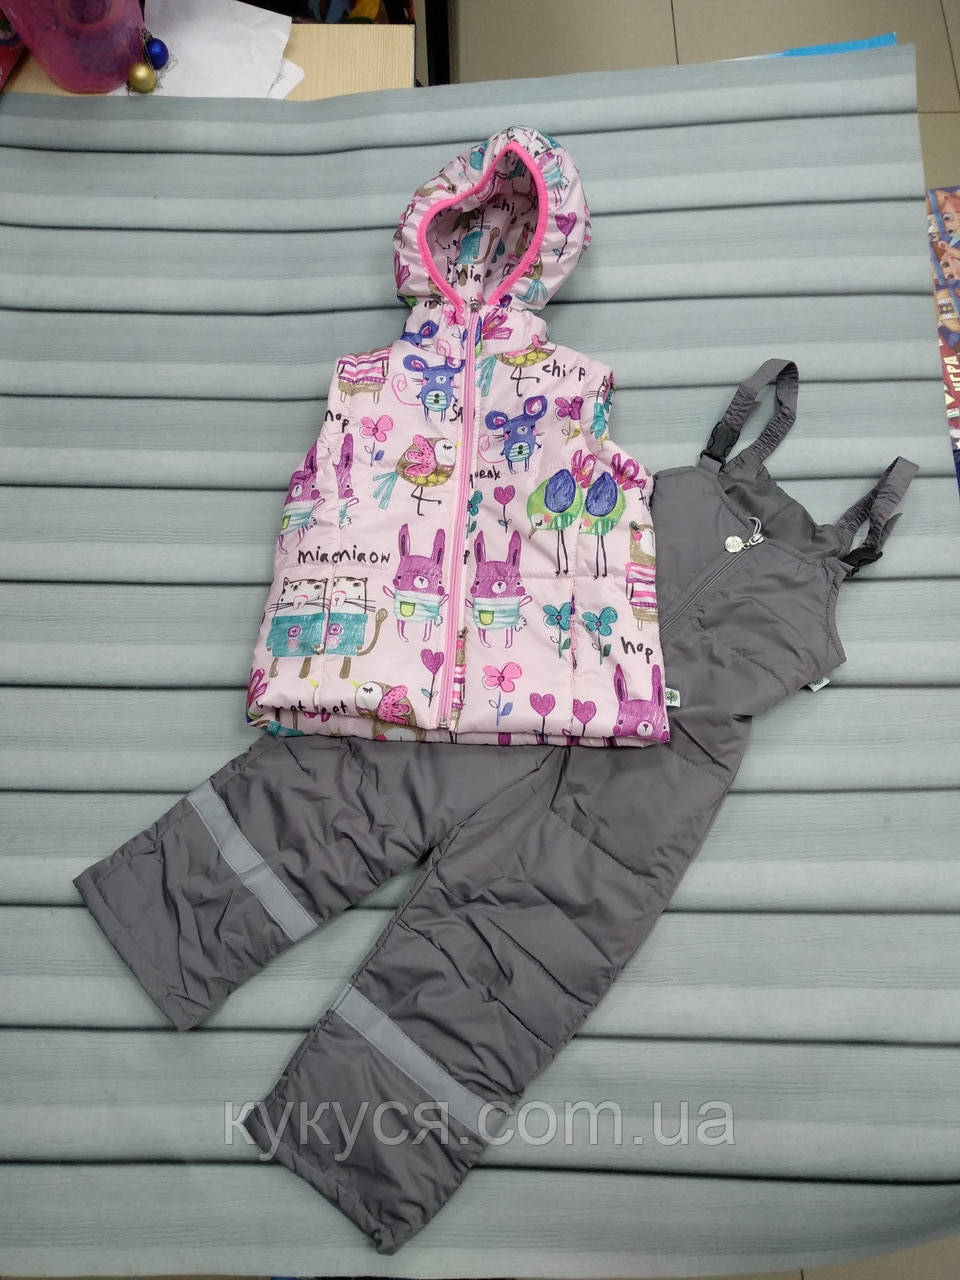 

Куртка-жилет (трансформер) для девочки "Animals"(розовая) с полукомбинезоном